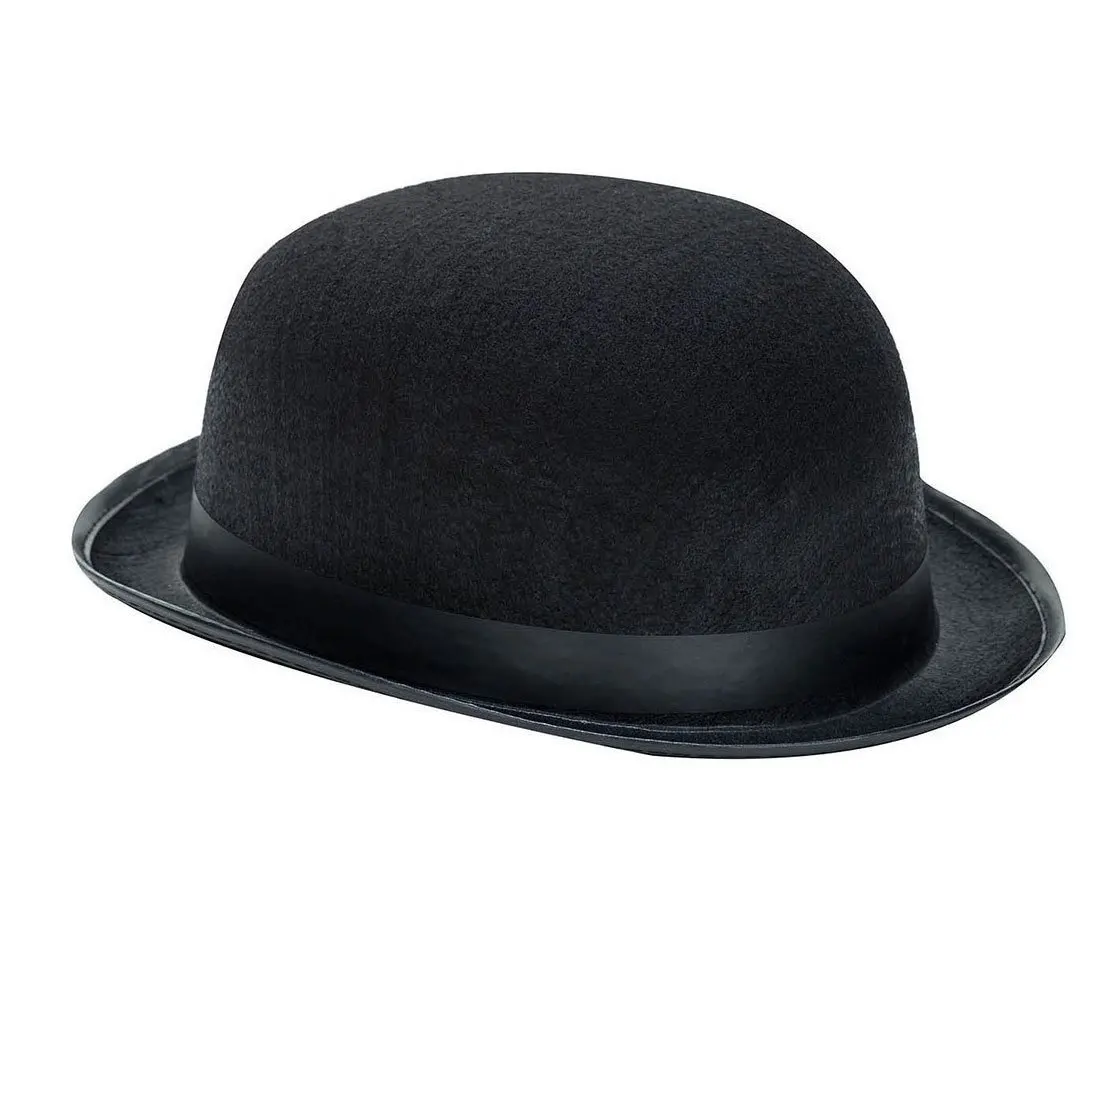 Мужская шляпа сканворд 7. Шляпа котелок 19 века. Котелок шляпа 19 век. Шляпа котелок мужская 19 века. Шляпы 19 века мужские.